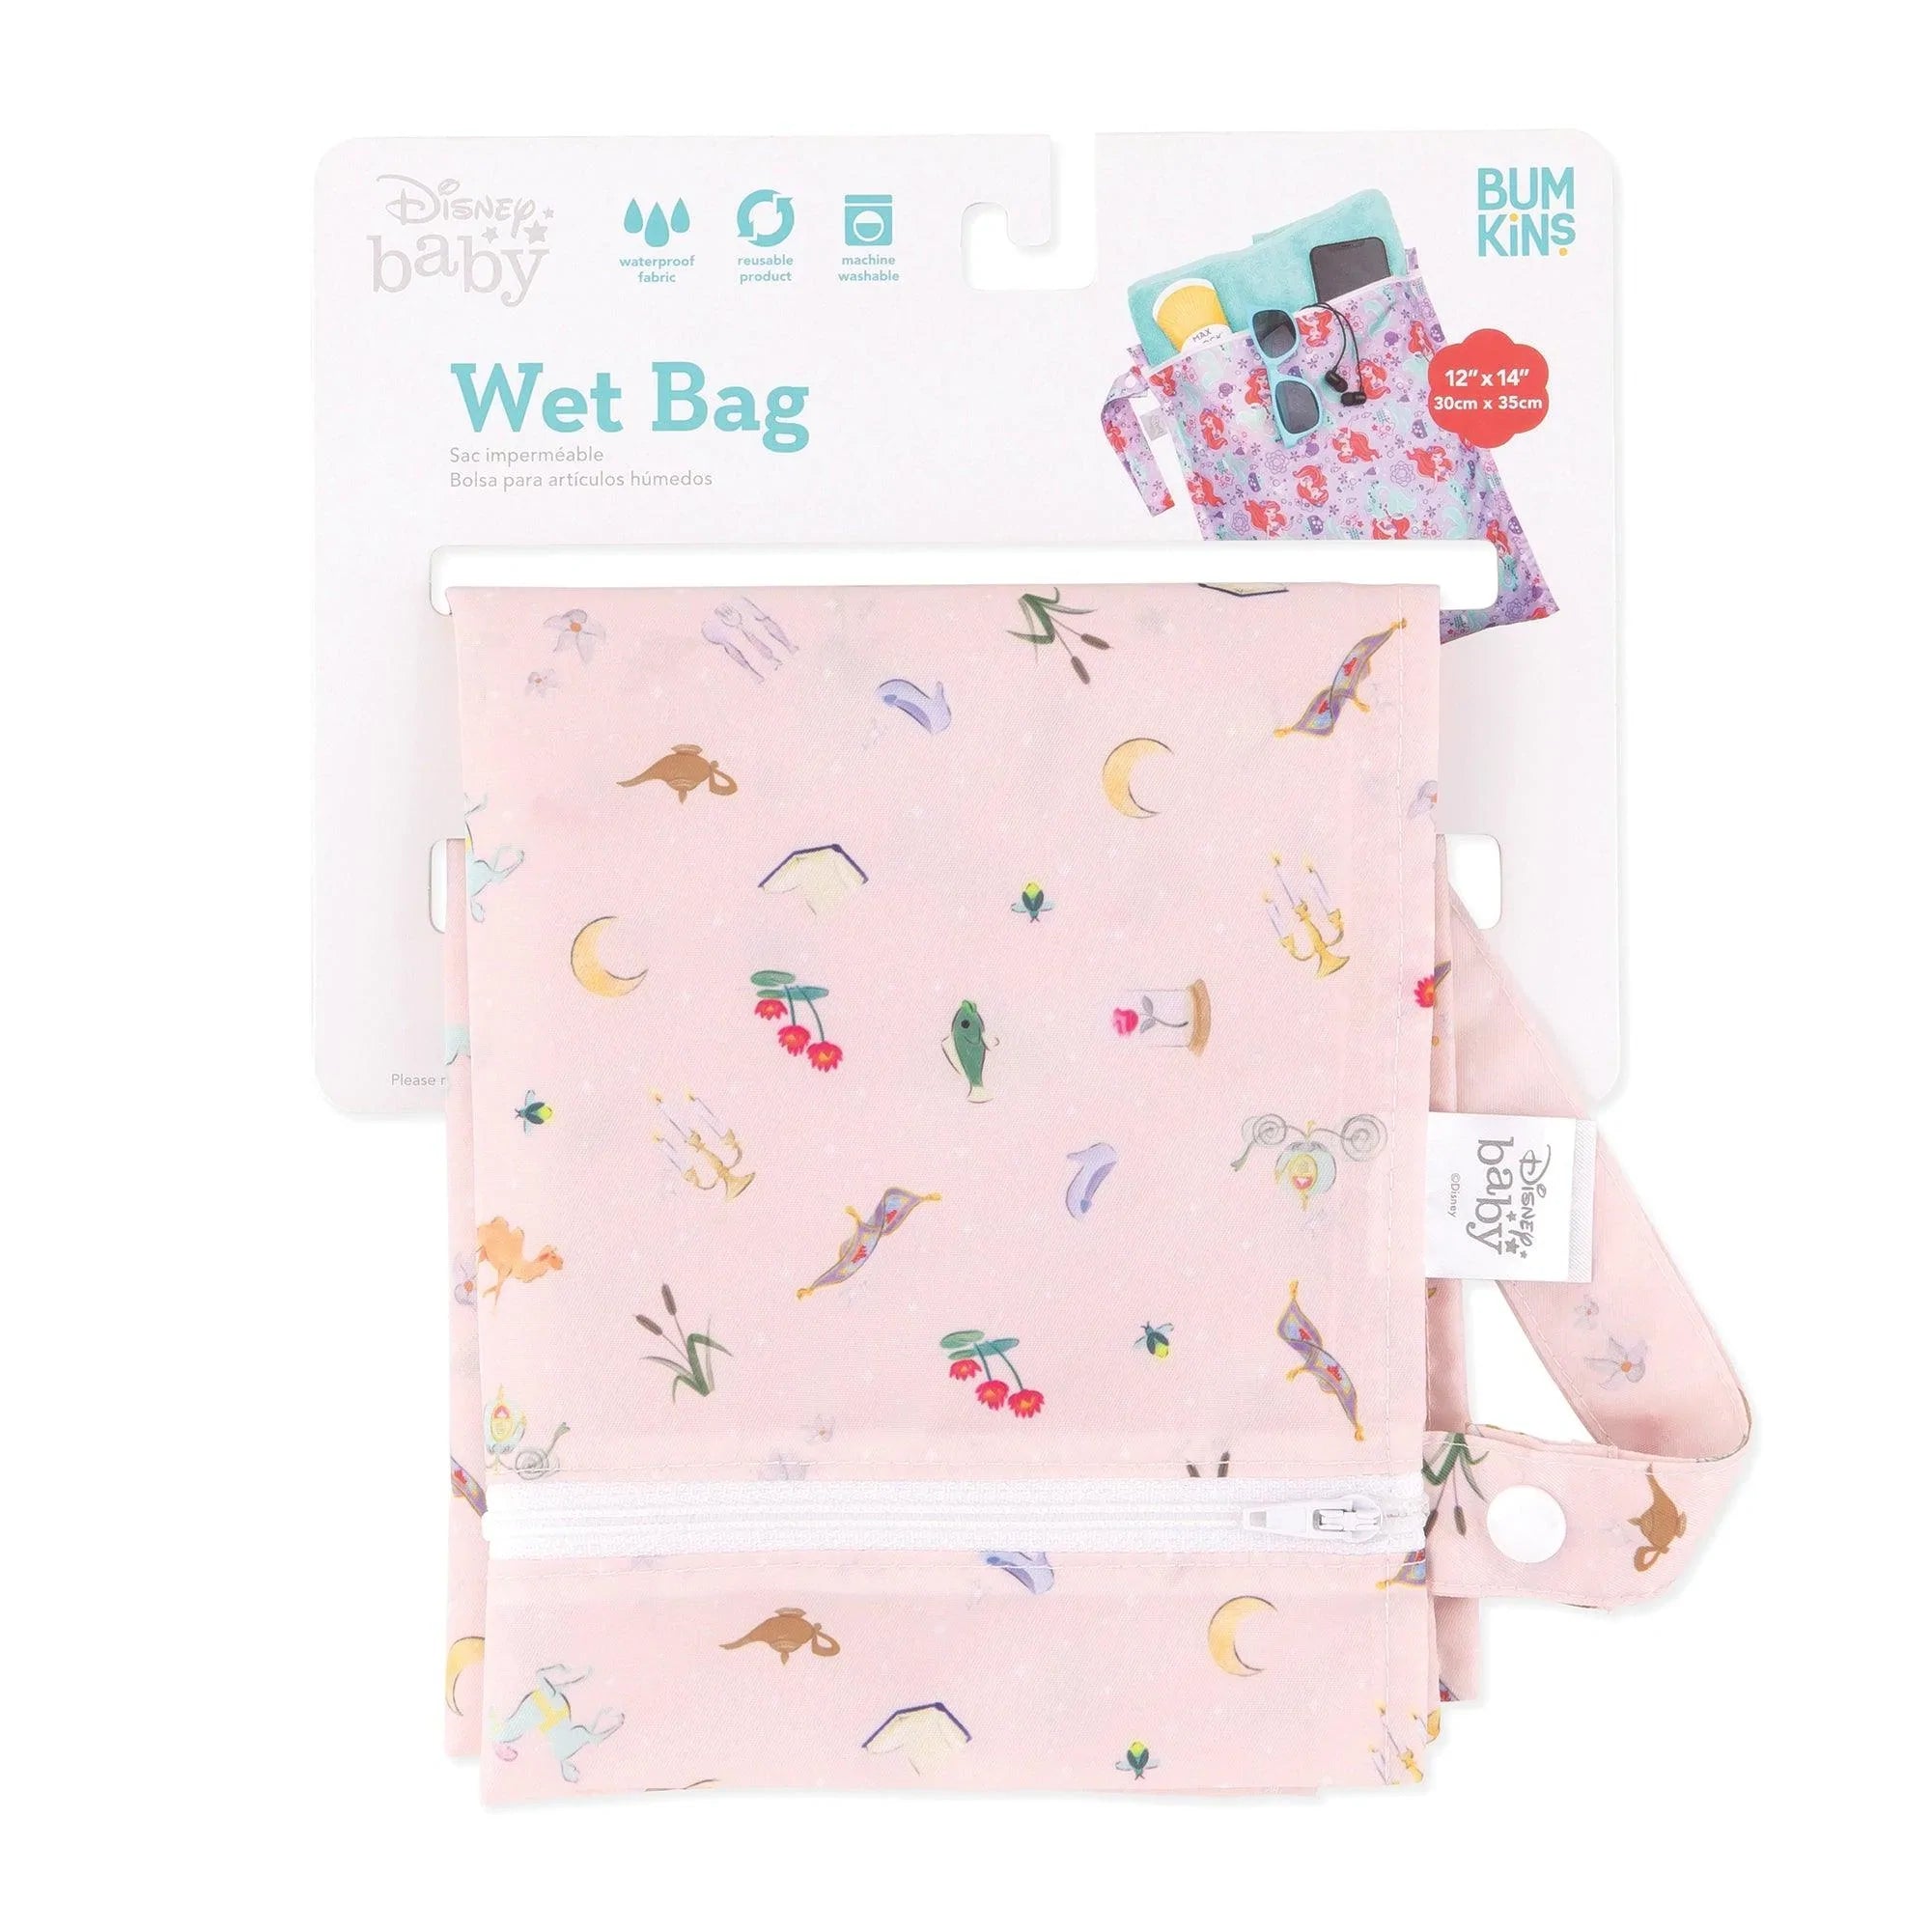 Wet Bag: Princess Magic - Bumkins